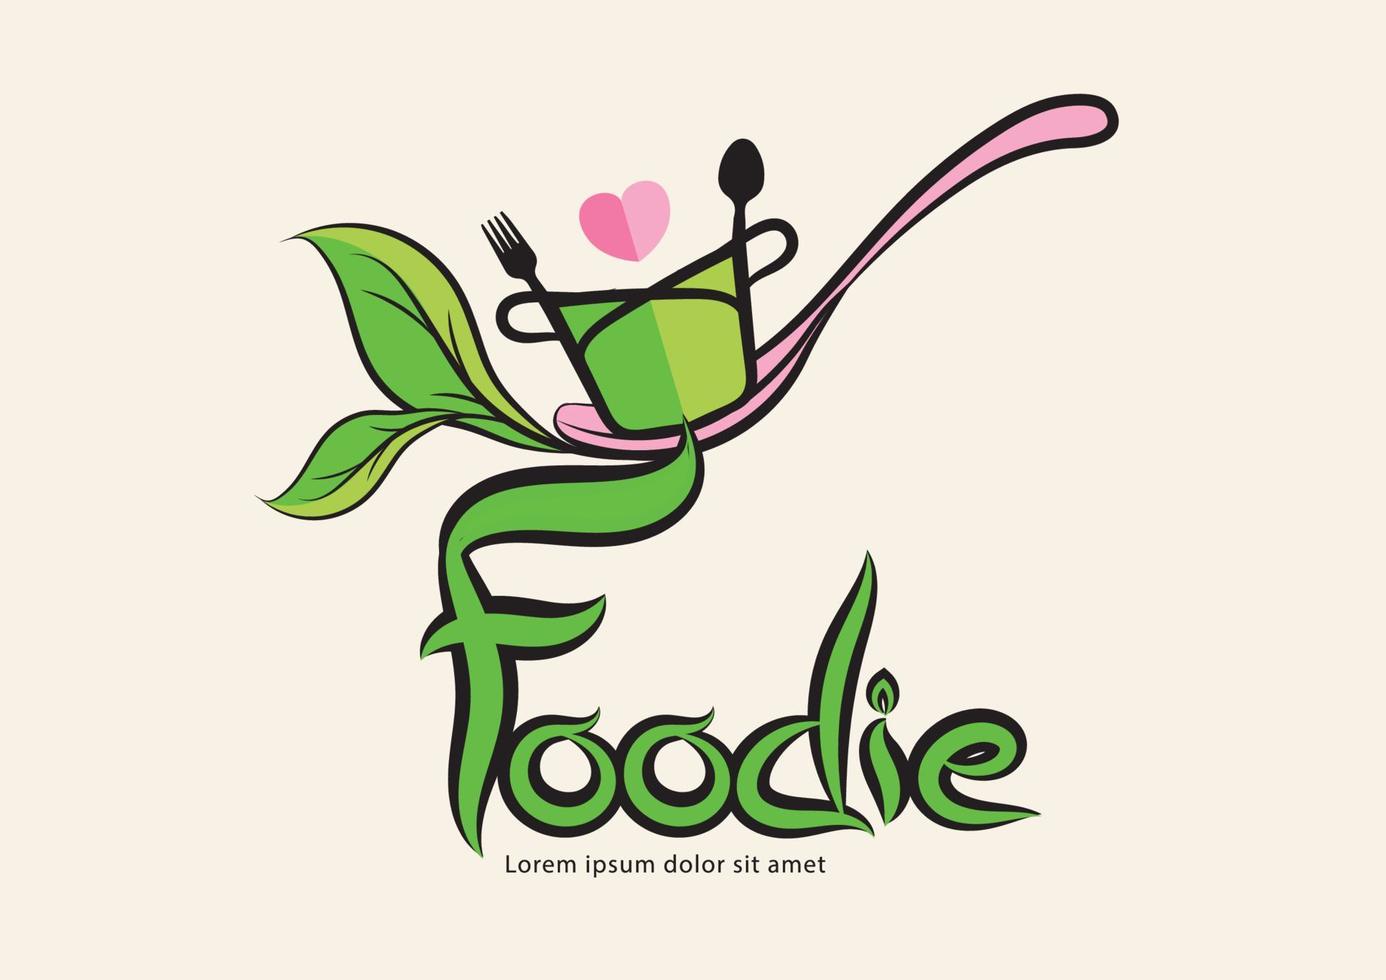 logo de typographie foodies et conception de vecteur de concept organique de cuillère, feuille verte, icône, symbole